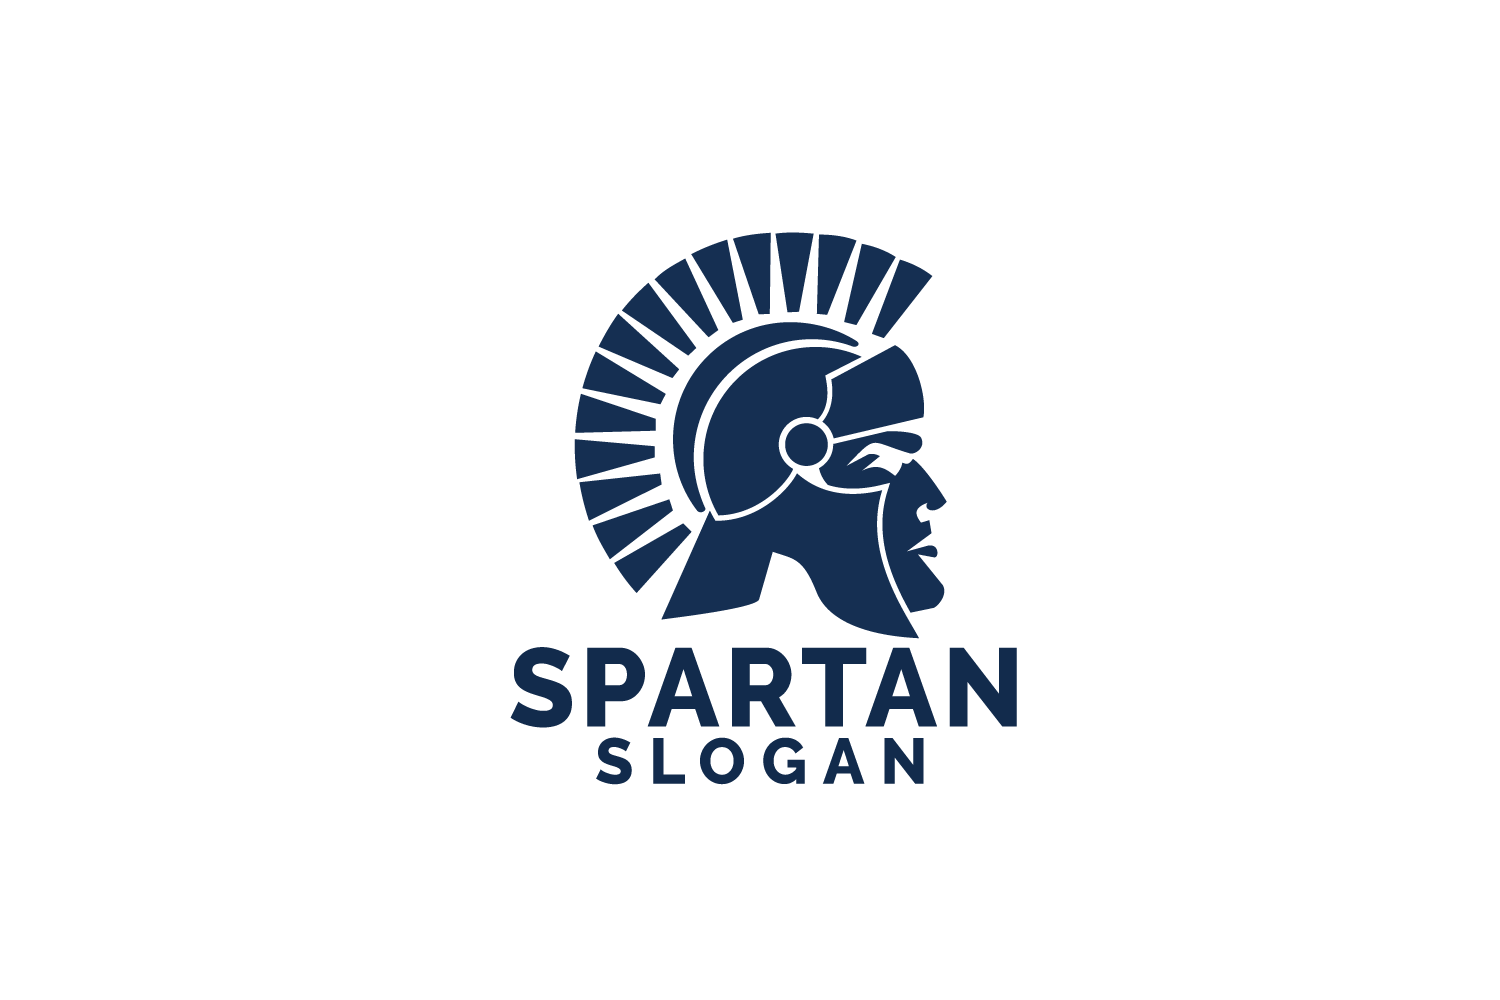 Sparten Logo - Spartan logo design. Antiques Spartan warrior vector design